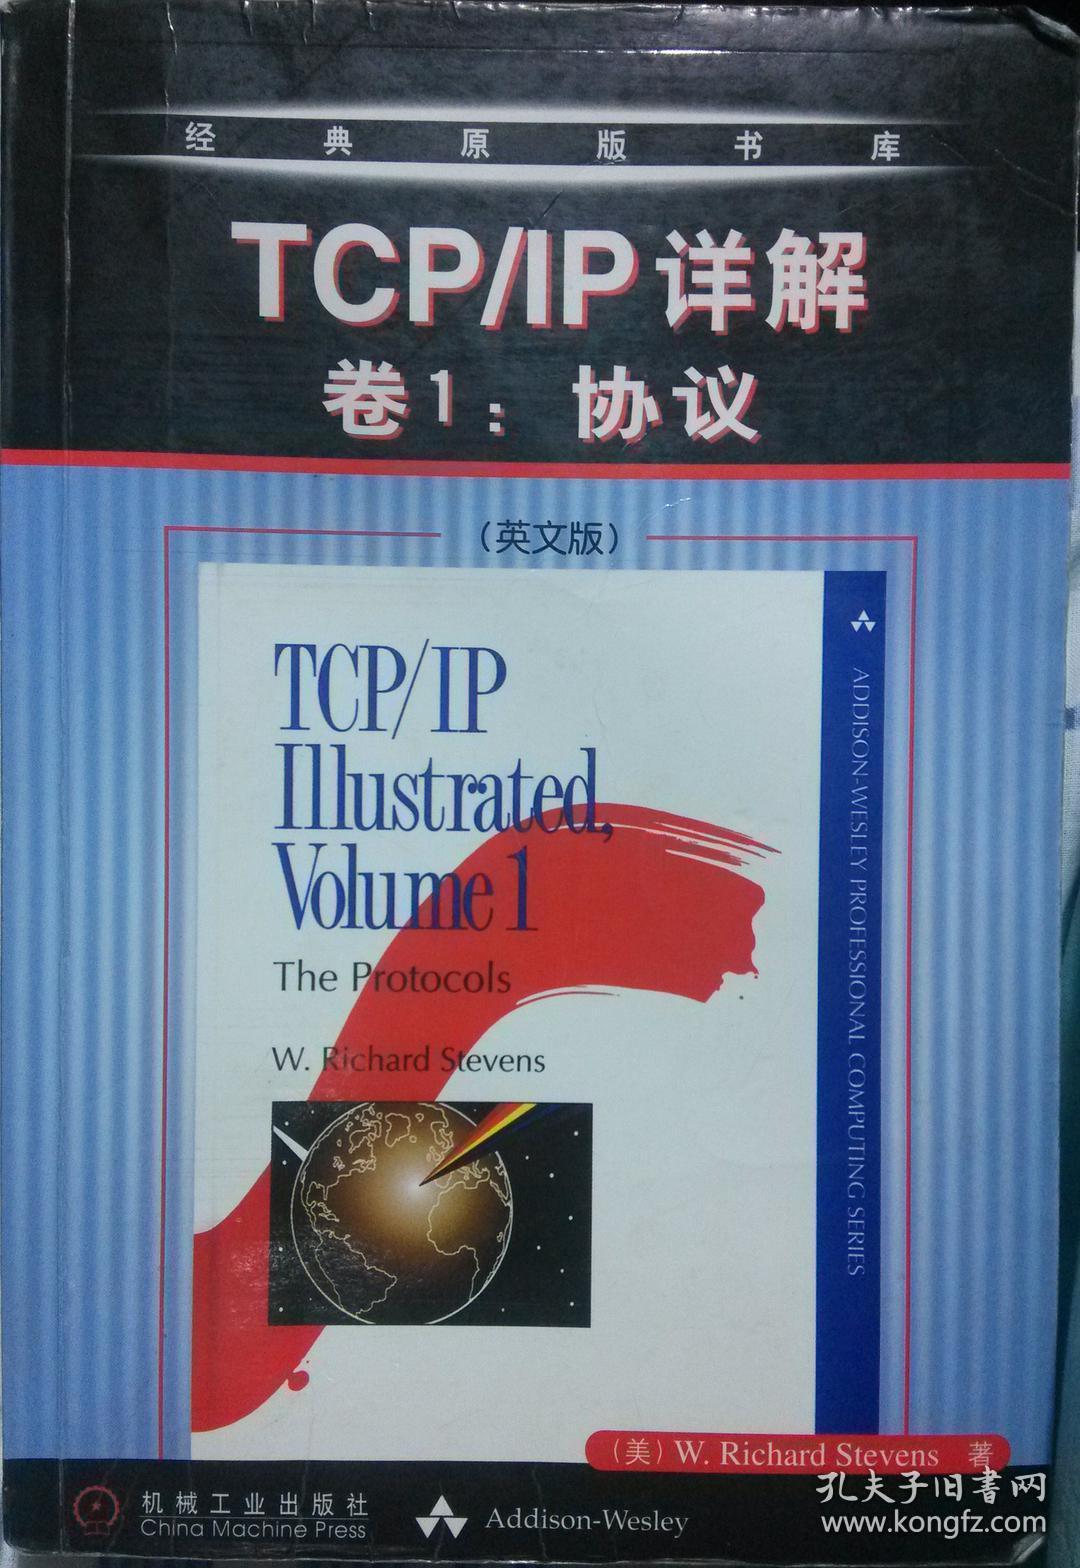 特价现货！TCP/IP详解卷1:协议(英文版)美.史蒂文斯9787111095057机械工业出版社